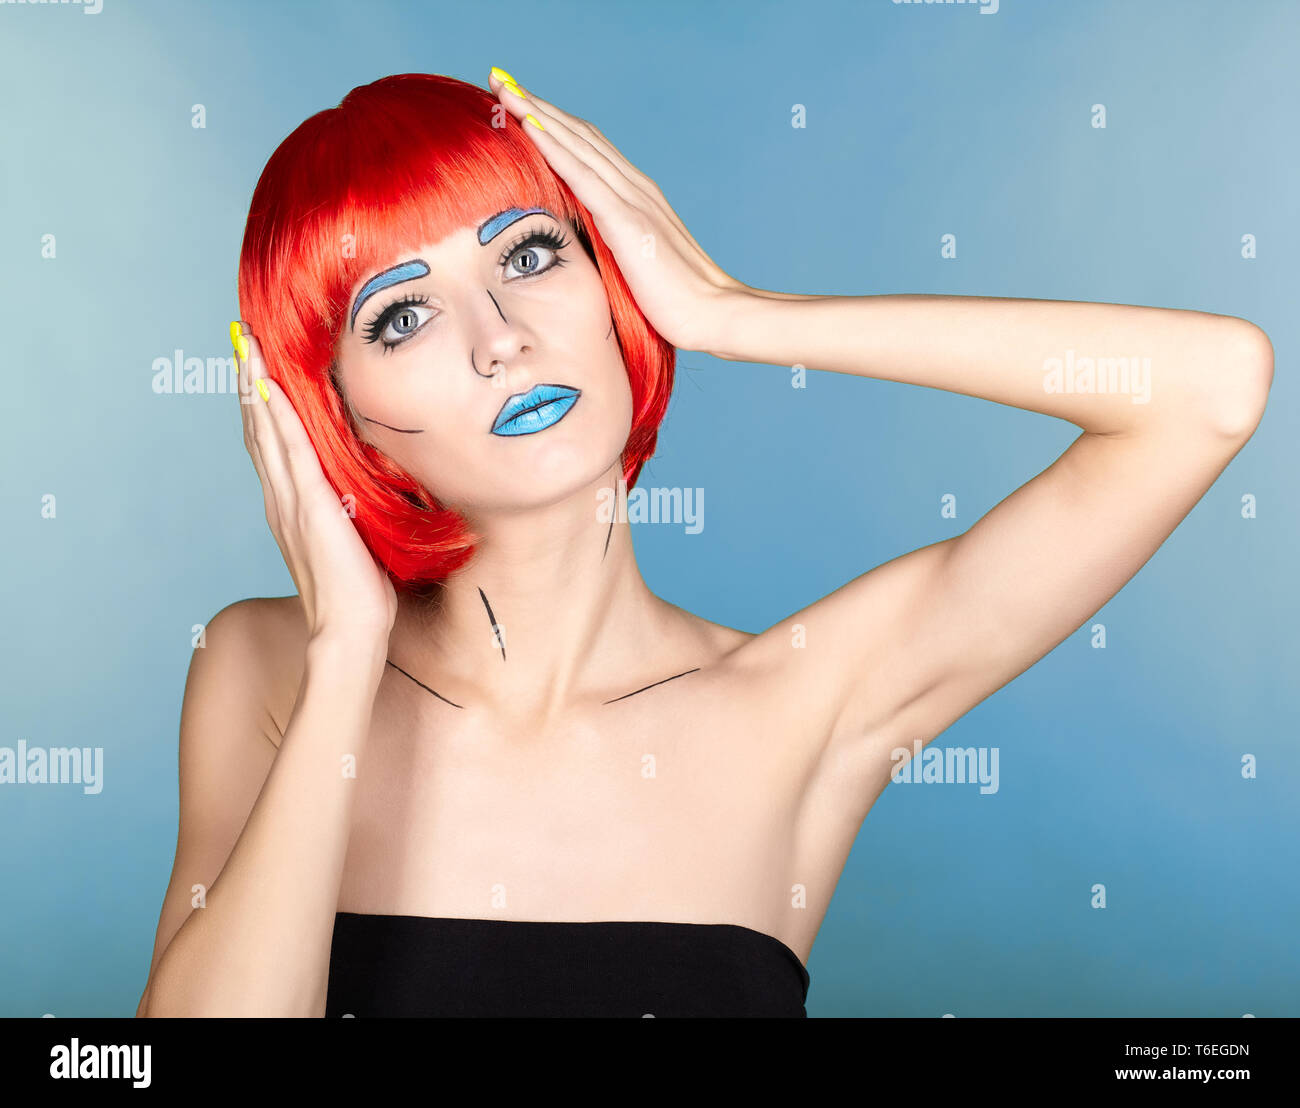 Frau in Rot Perücke und in den komischen Pop art Make-up Stil auf blauem Hintergrund Stockfoto